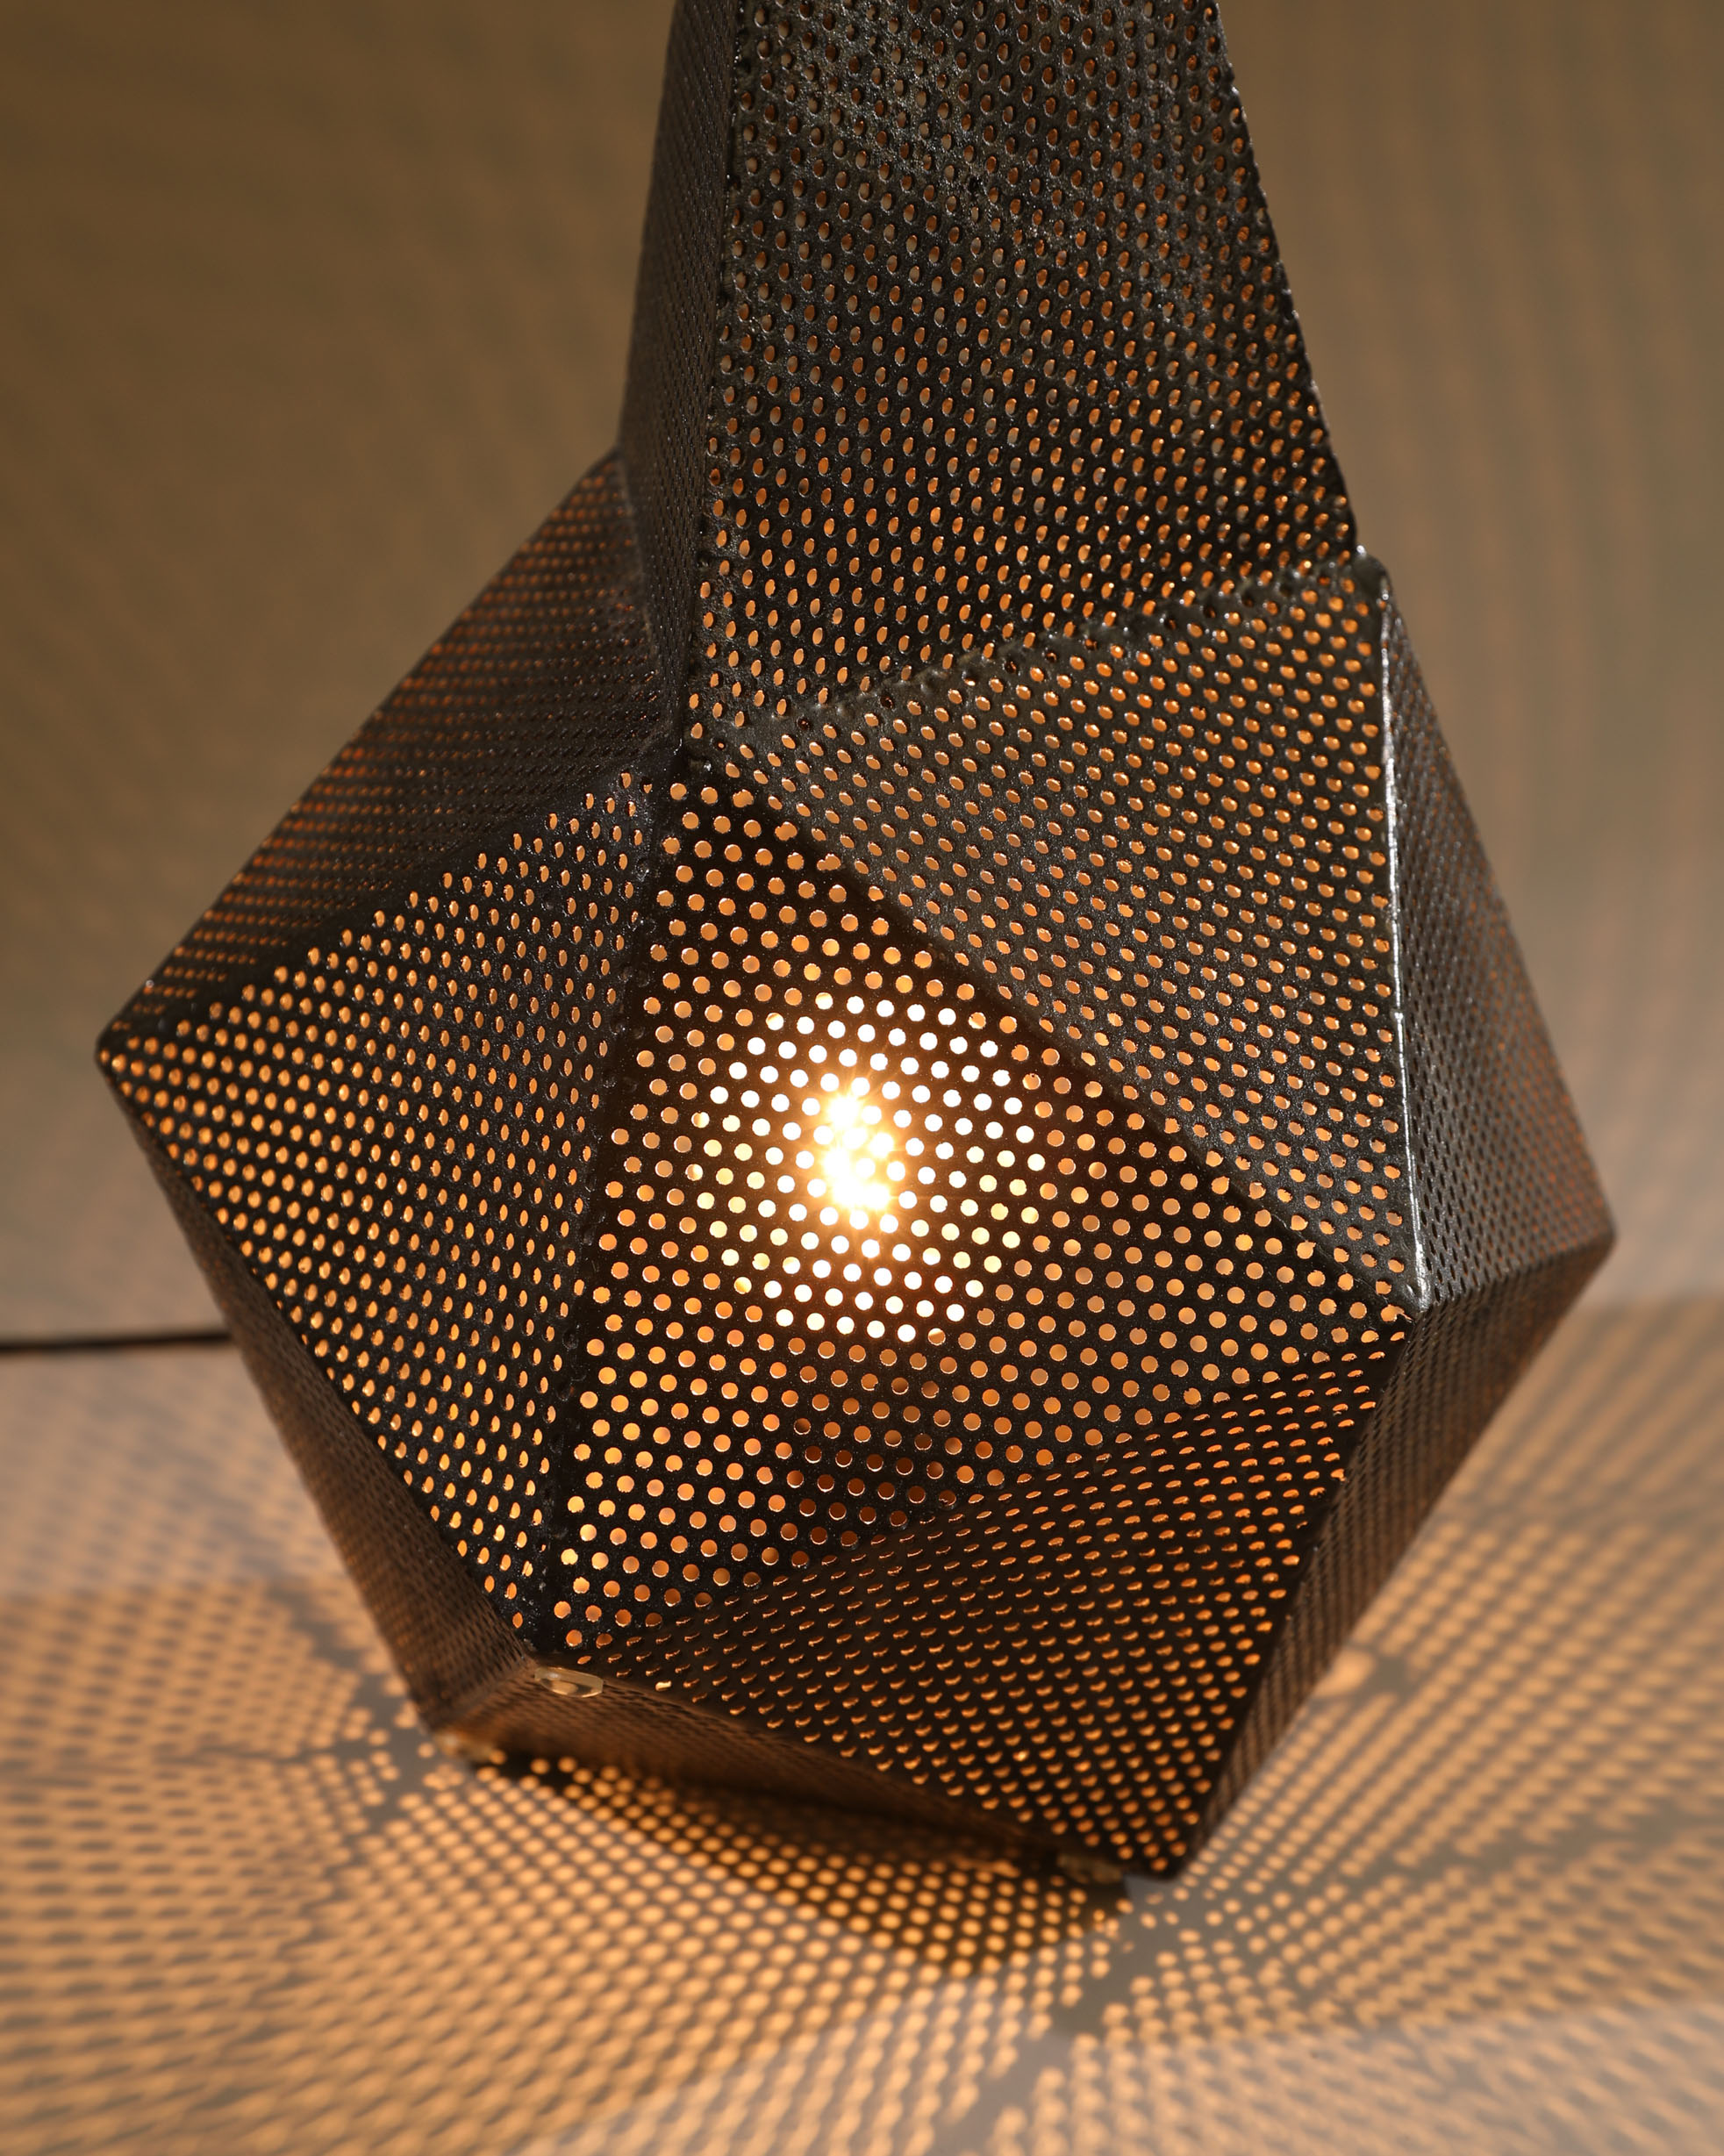 Mathieu Matégot, perforated plate table Lamp, model Bagdad - Image 3 of 3